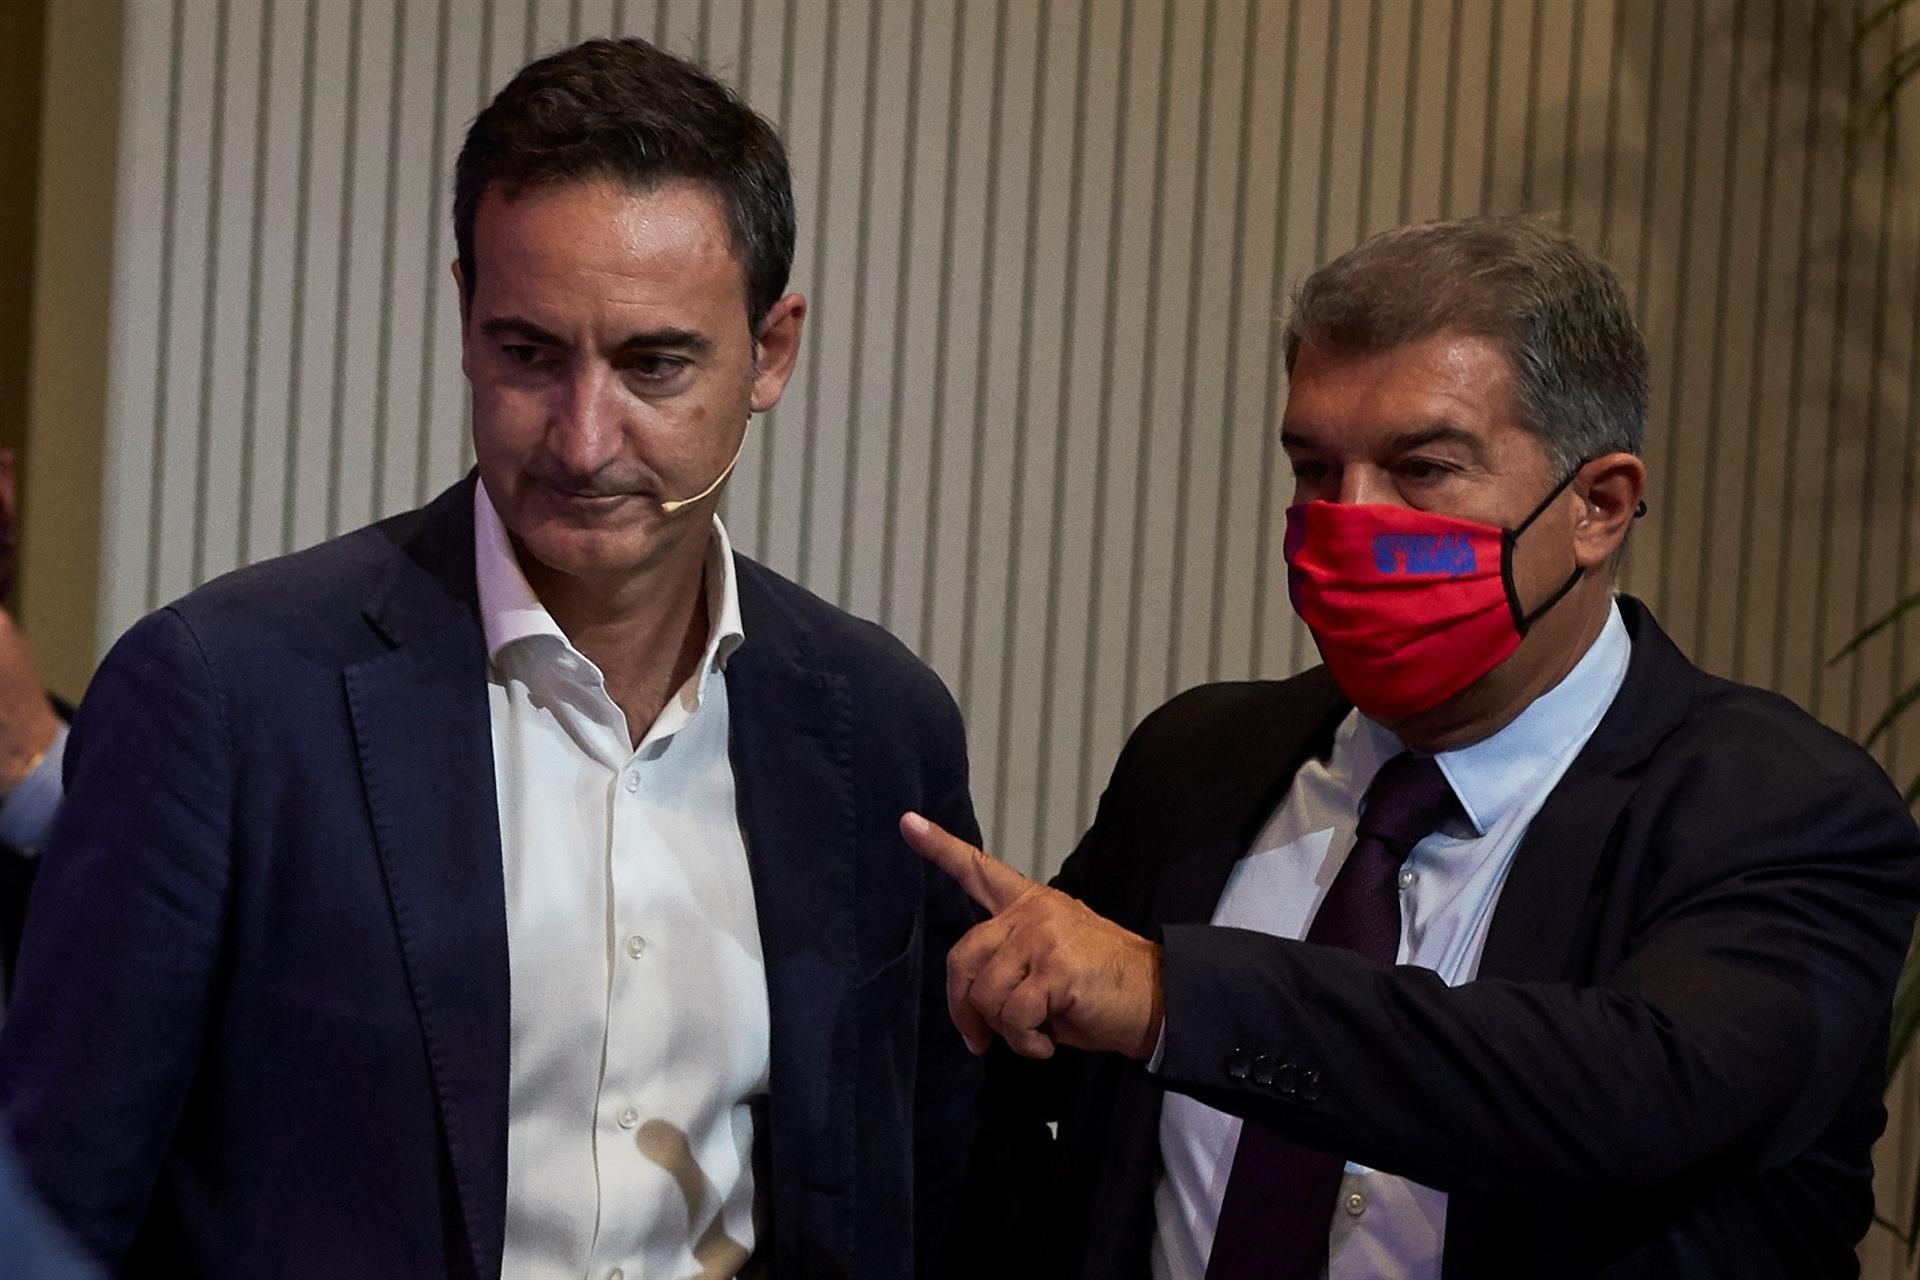 El Barça confirma las "irregularidades" de Bartomeu, pero aplaza posibles acciones judiciales